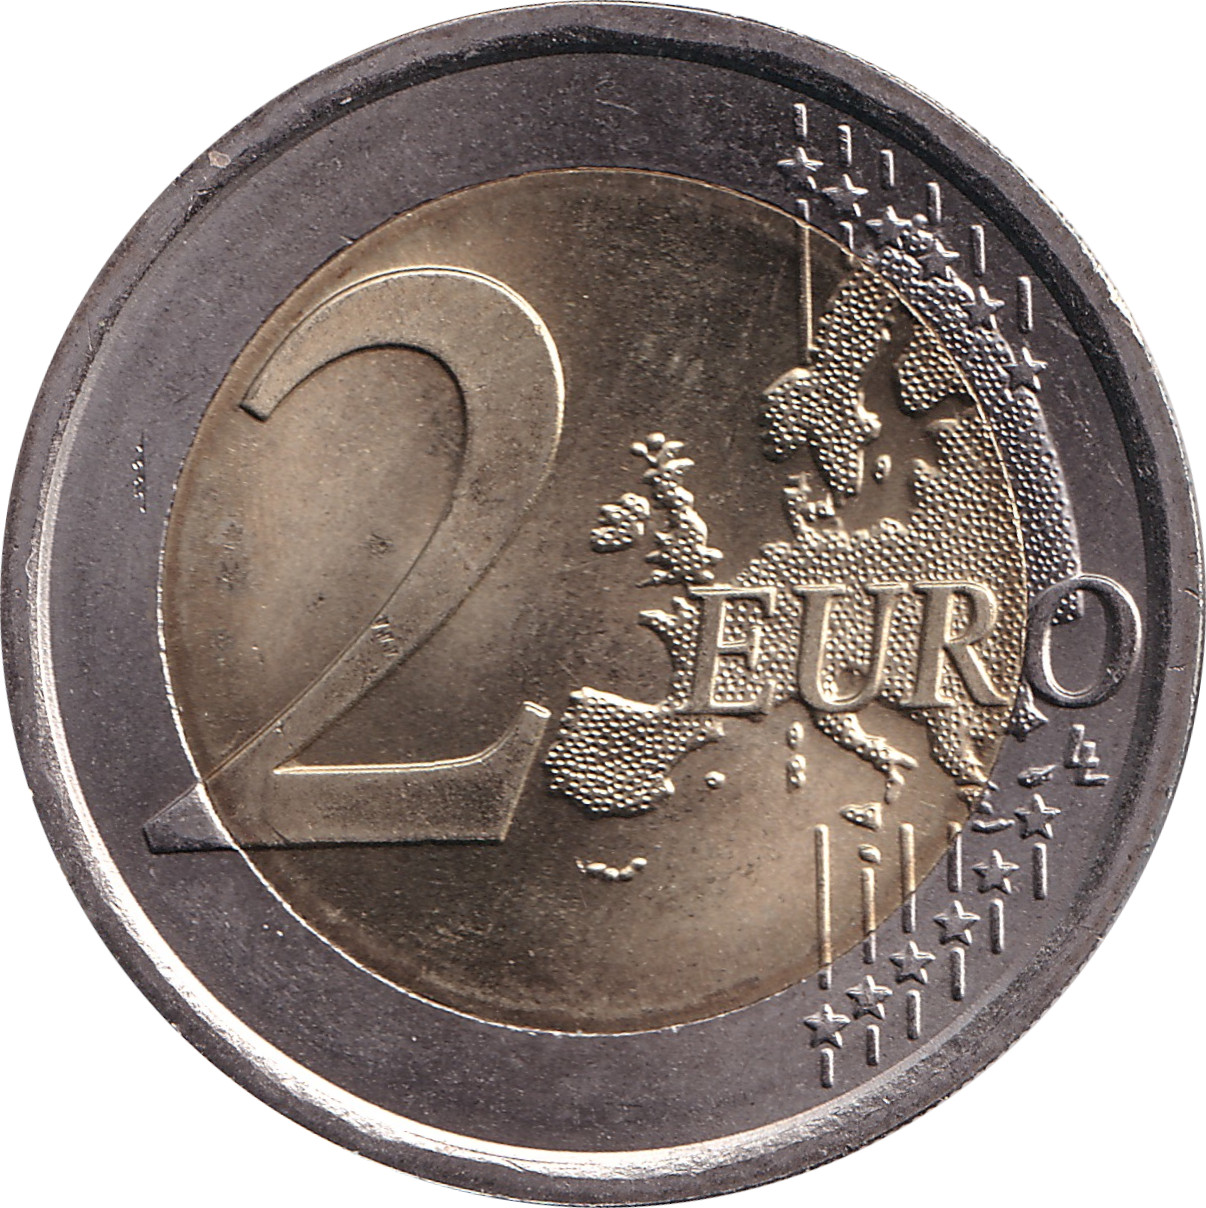 2 euro - Giuseppe Verdi